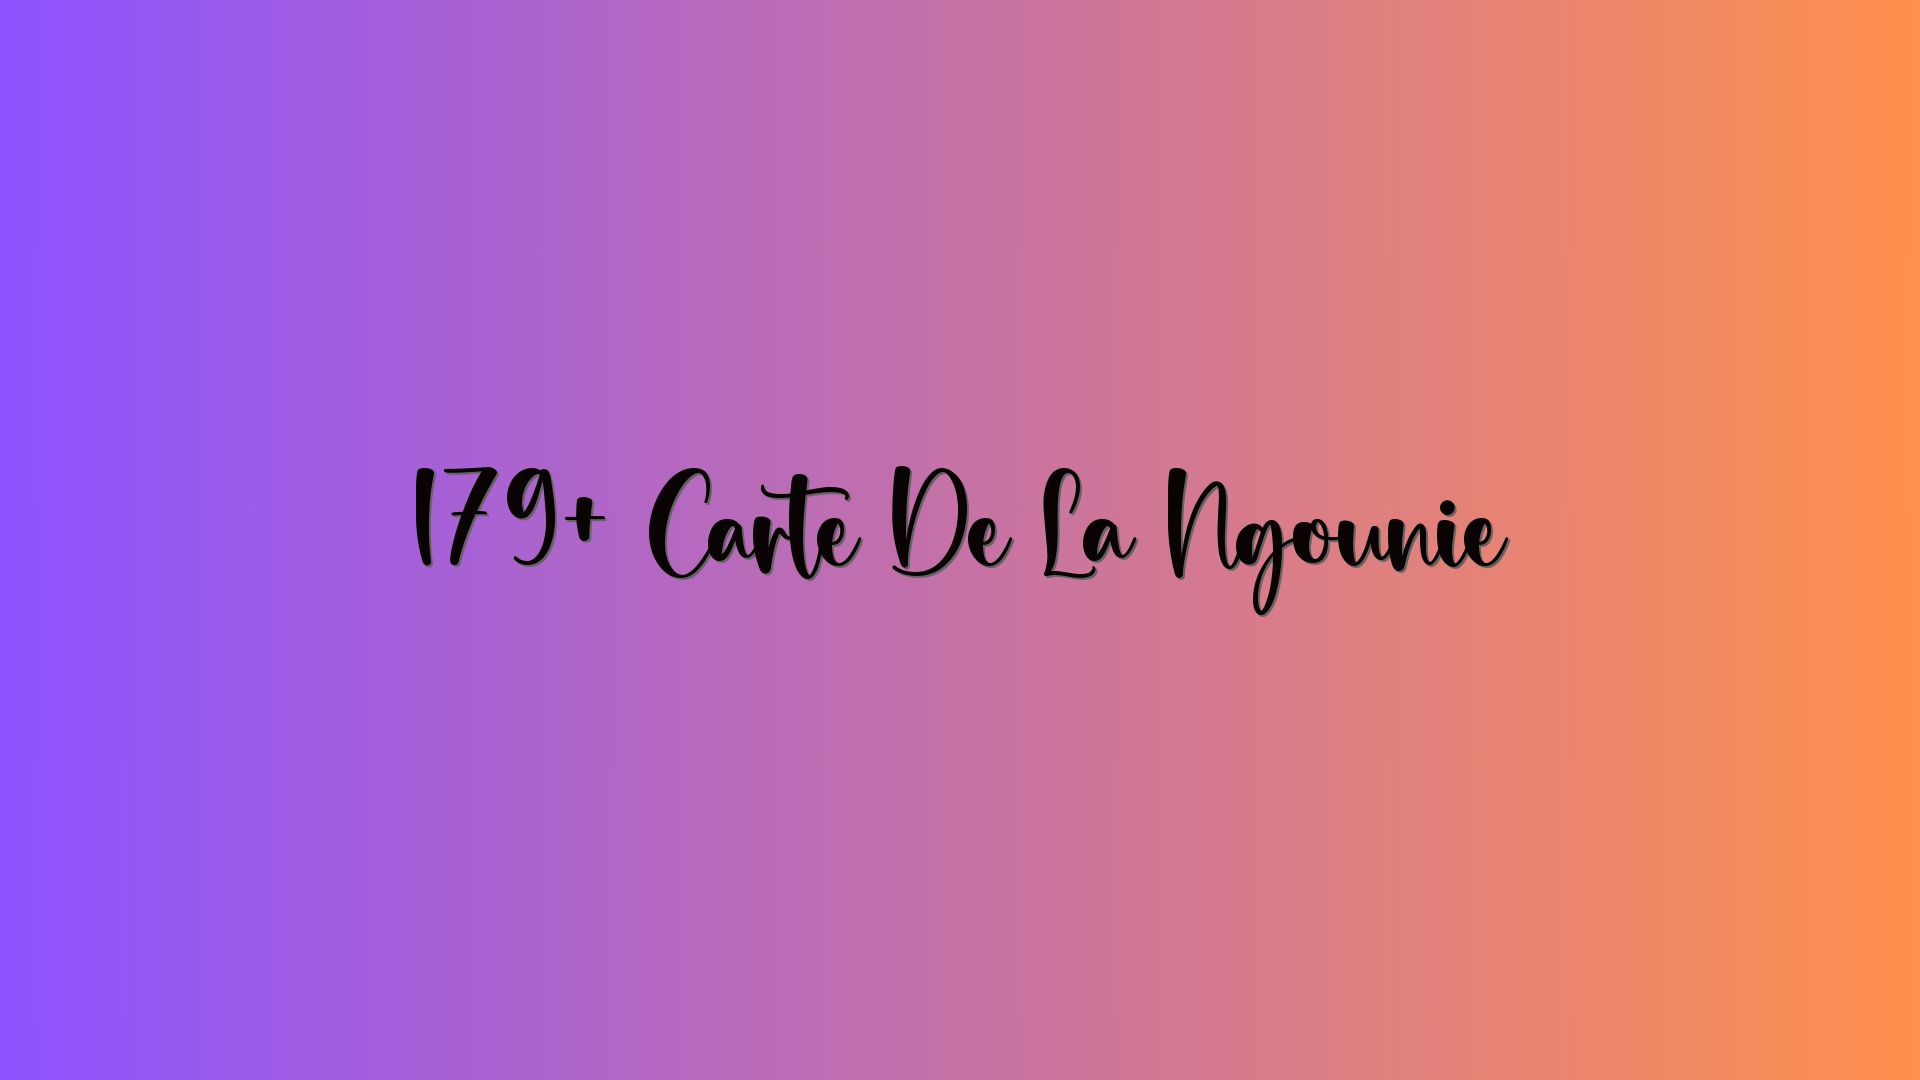 179+ Carte De La Ngounié